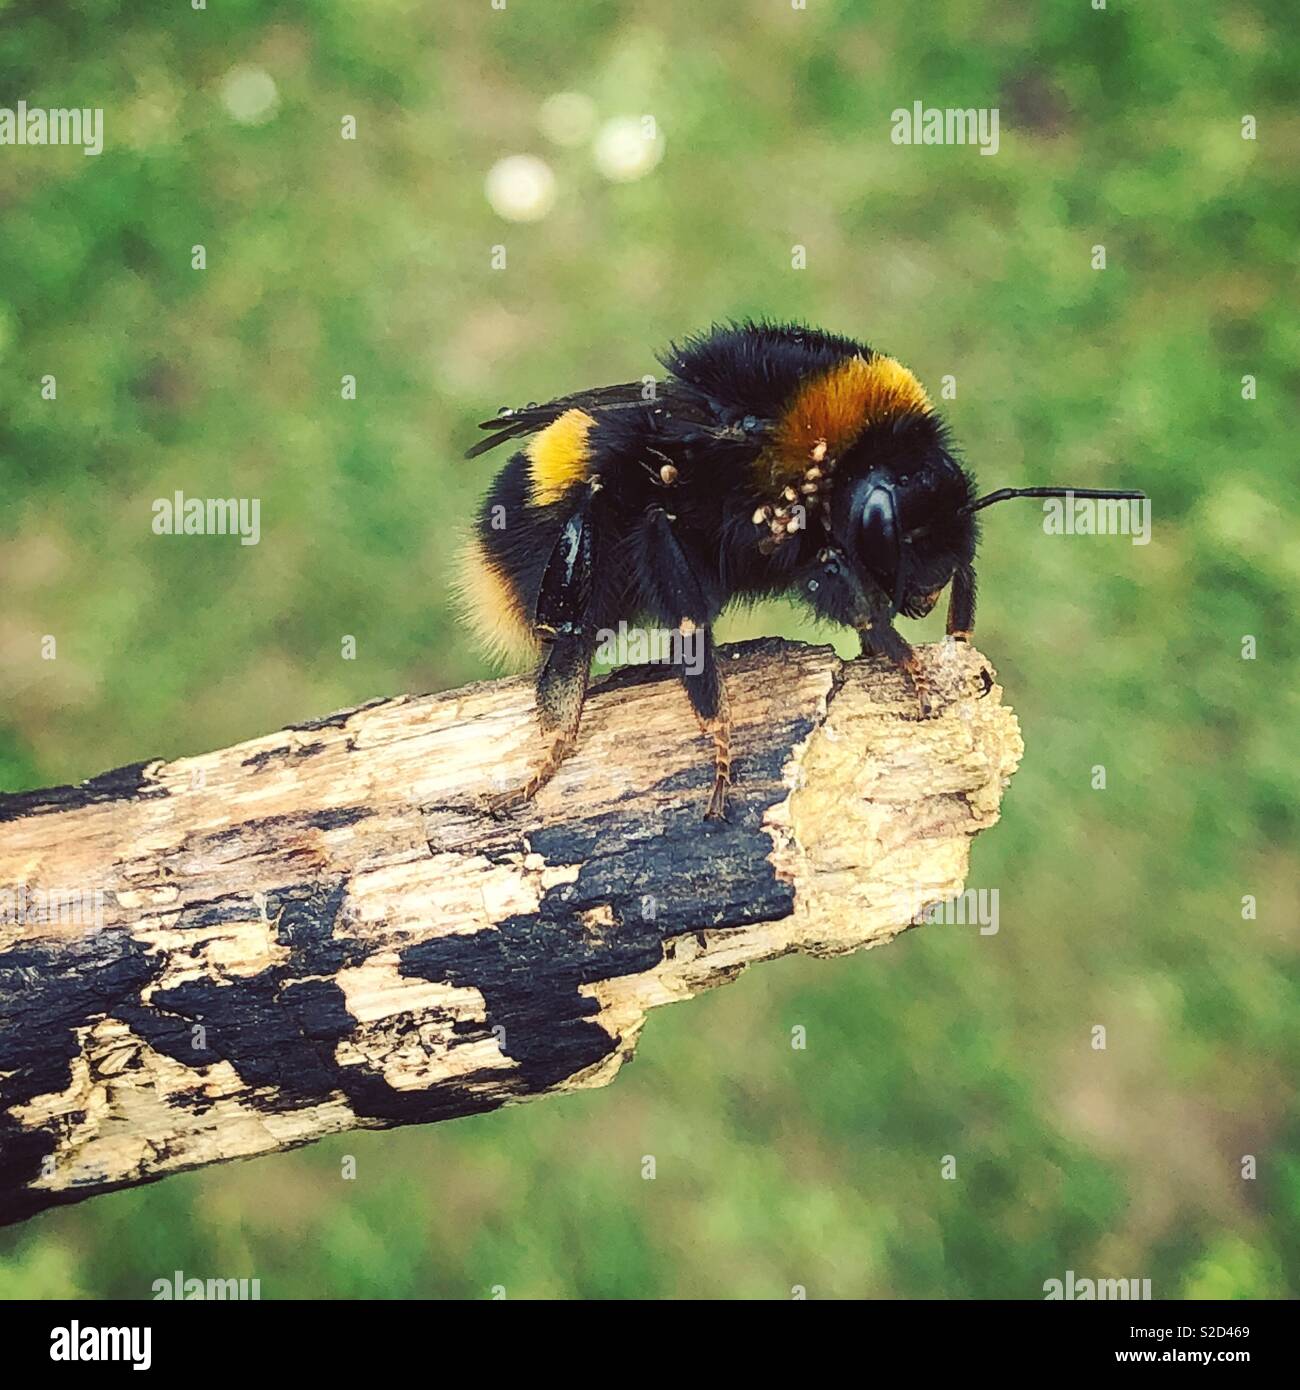 Bumble bee close up Stock Photo